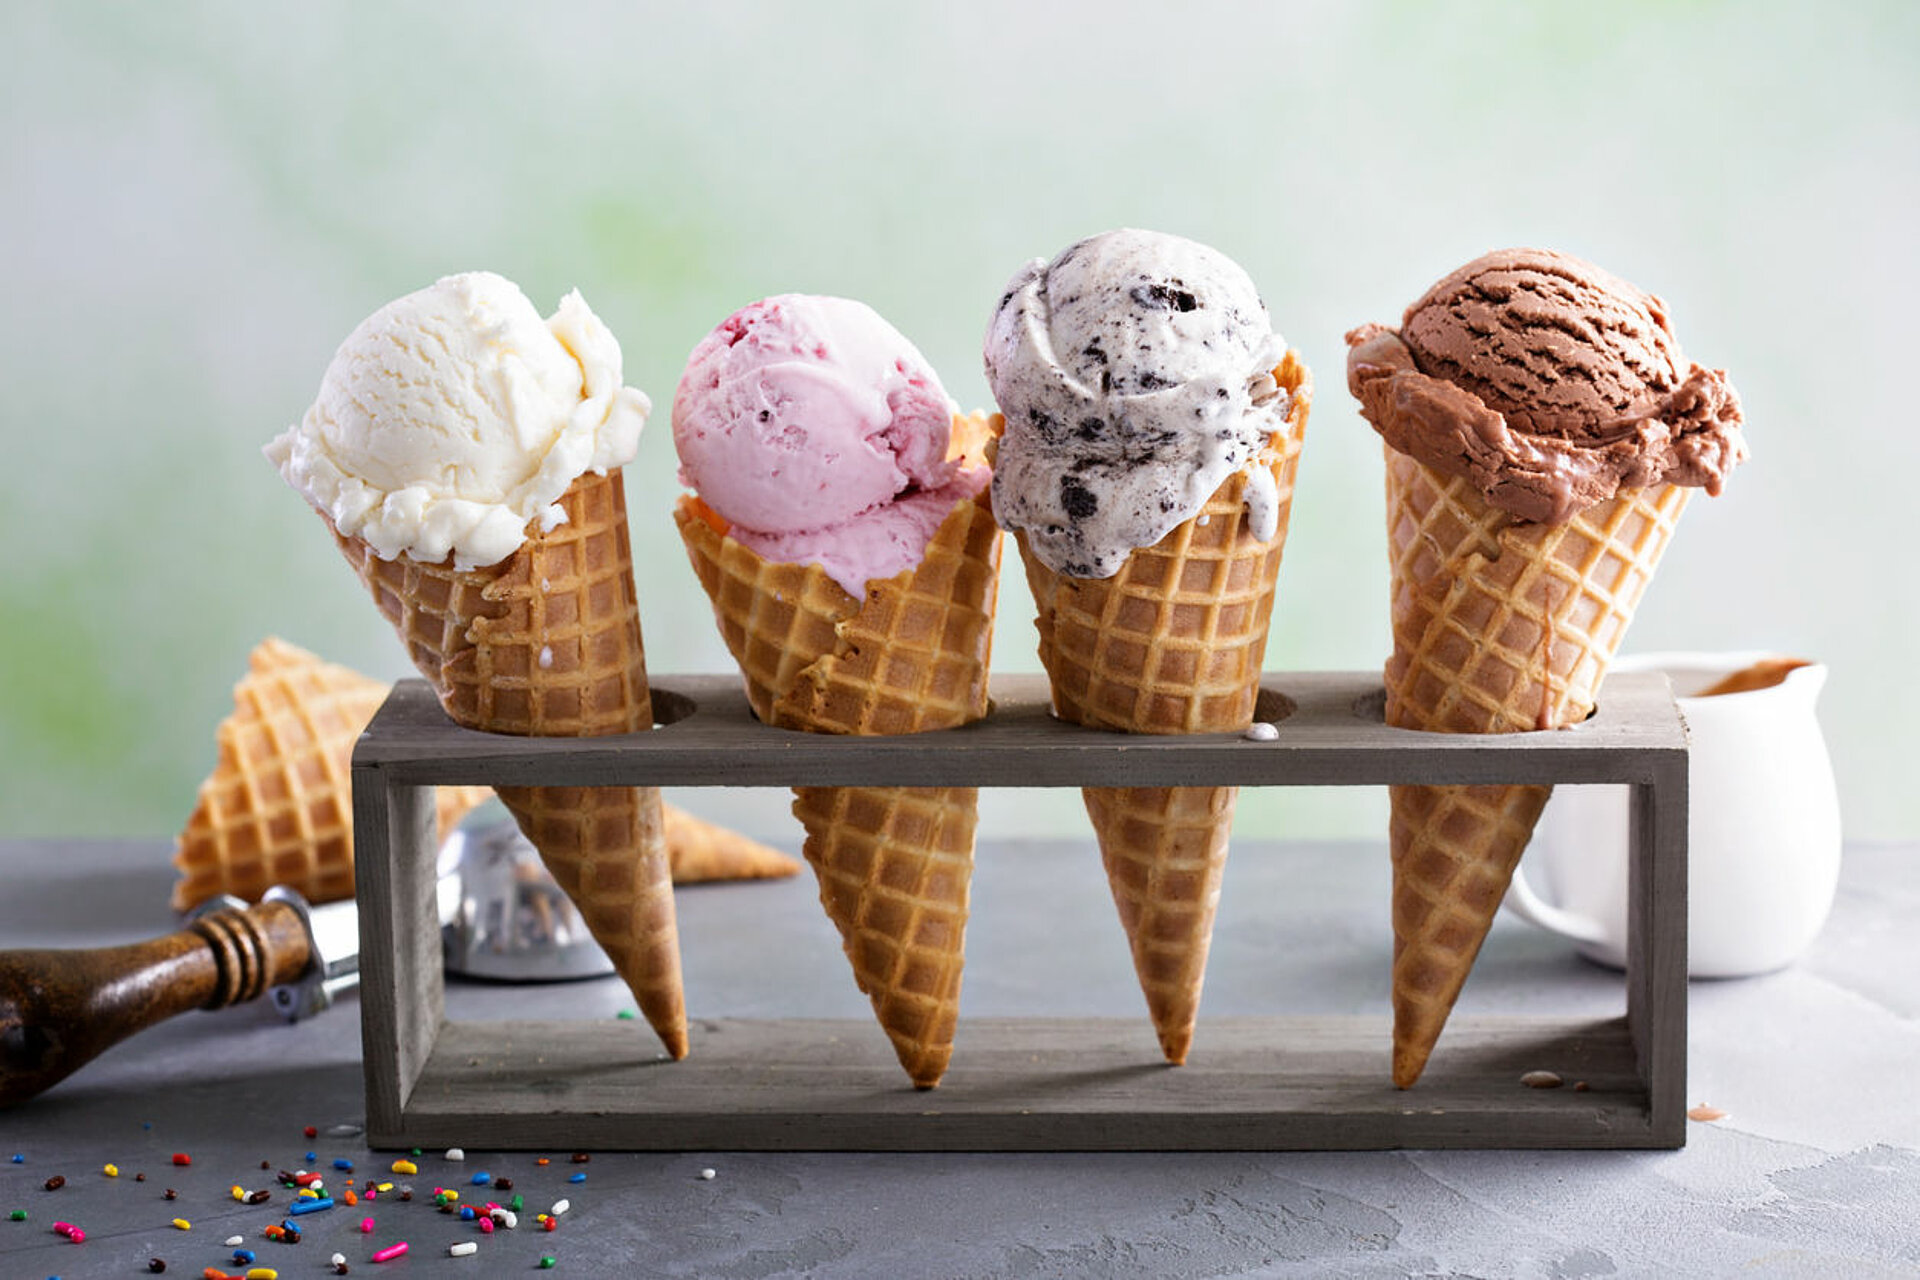 Desillusie Nieuwe aankomst Vriendin PuurGezond: Is het waar dat alle ijsjes caloriebommen zijn?